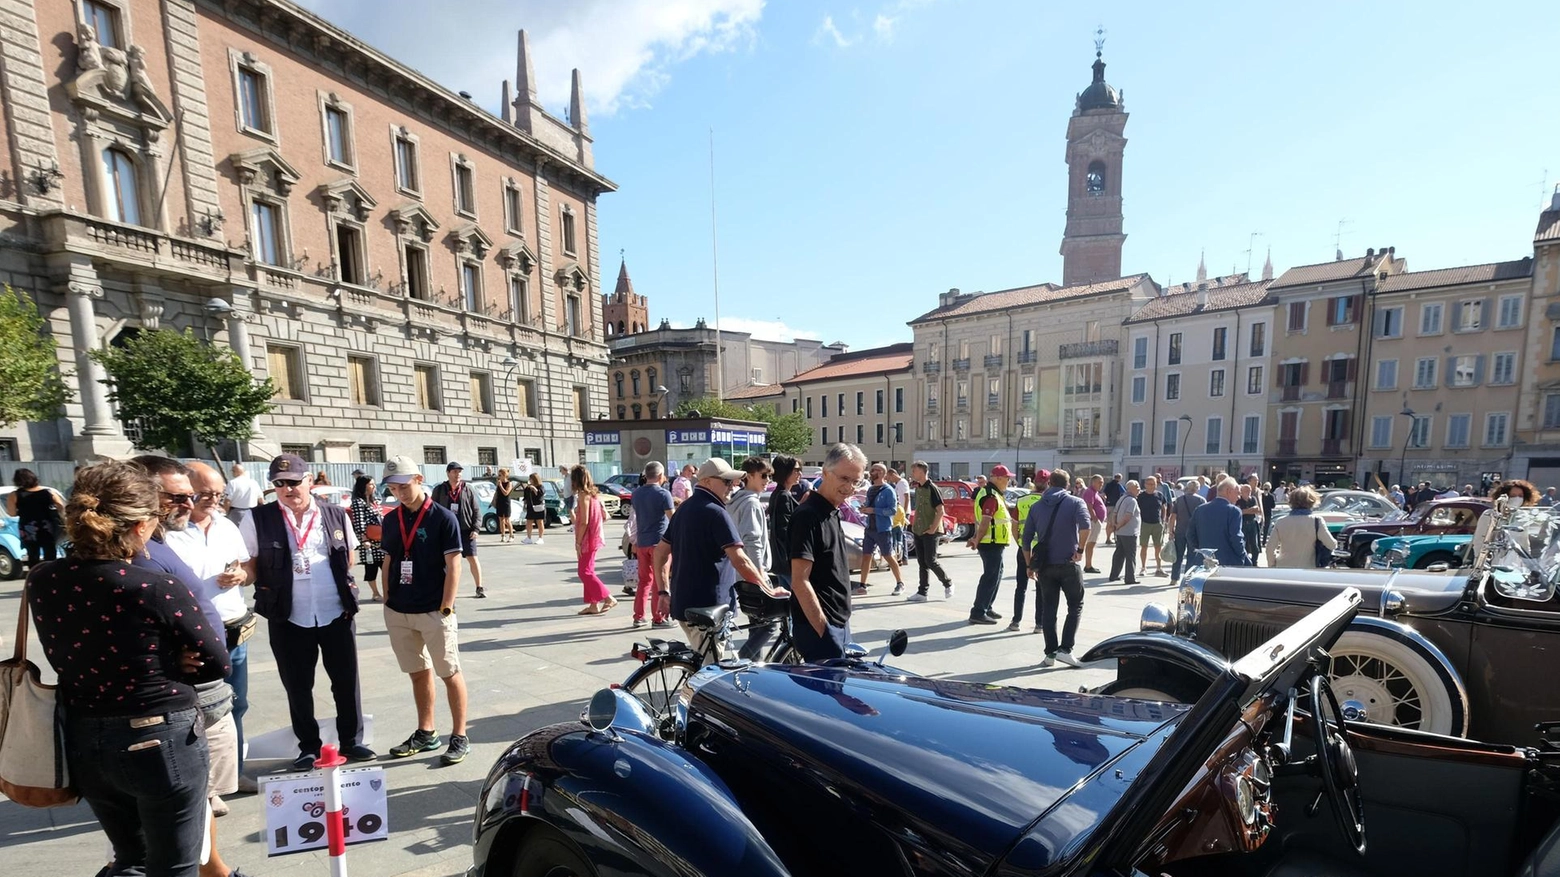 Monza accende i motori con l'Italian Motor Week, evento dedicato alla sicurezza stradale e al patrimonio motoristico italiano. Simulazioni, esposizioni e dimostrazioni per sensibilizzare sulle tematiche legate alla guida.